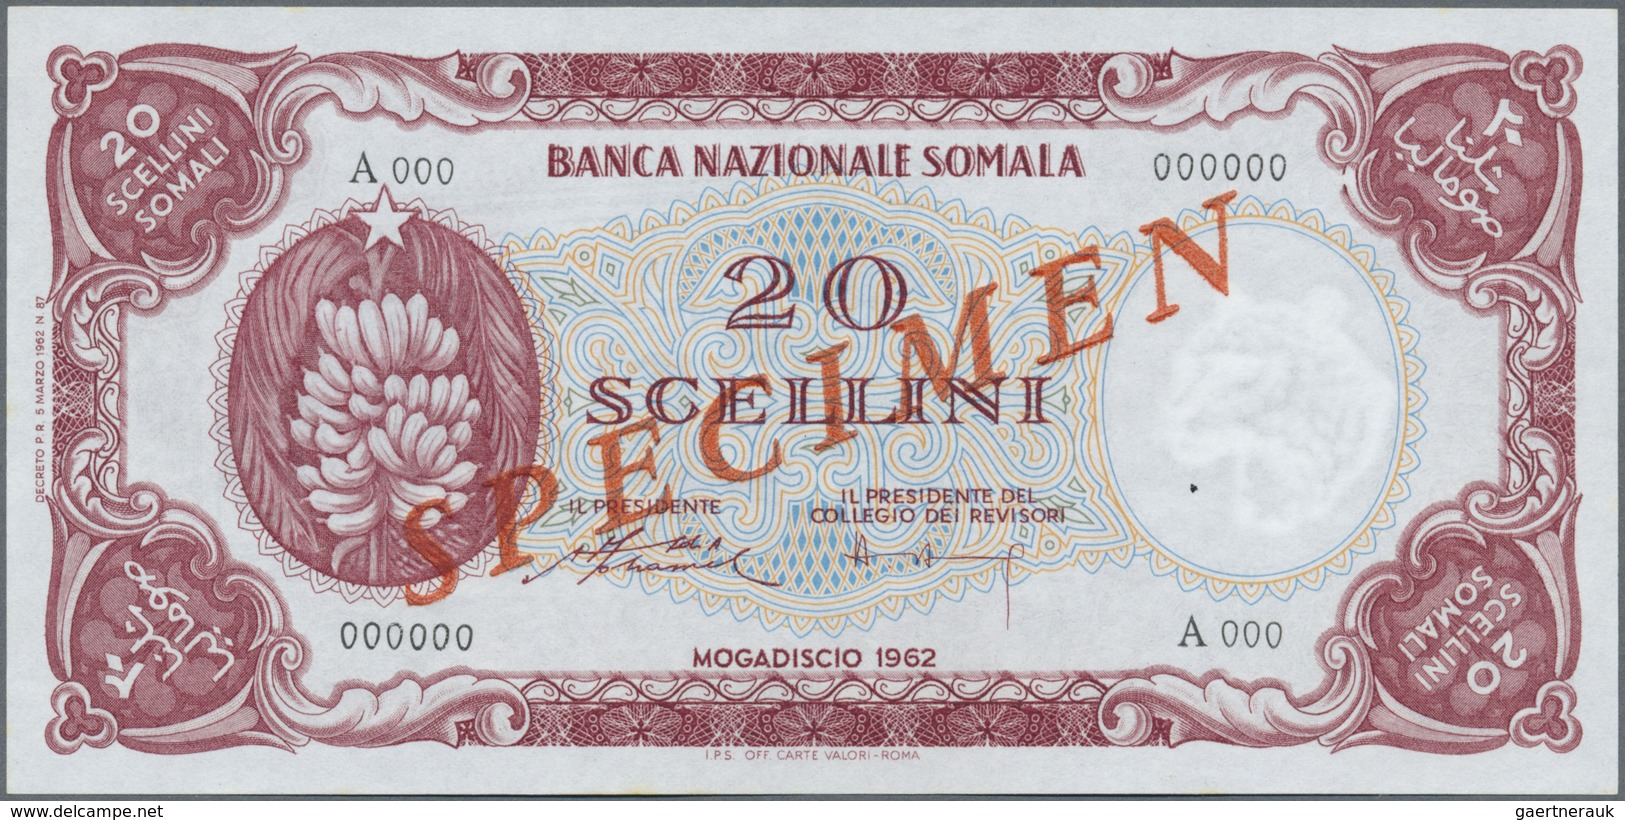 Somalia: Banca Nazionale Somala 20 Scellini 1962 SPECIMEN, P.3s With A Tiny Dint At Lower Right Corn - Somalia